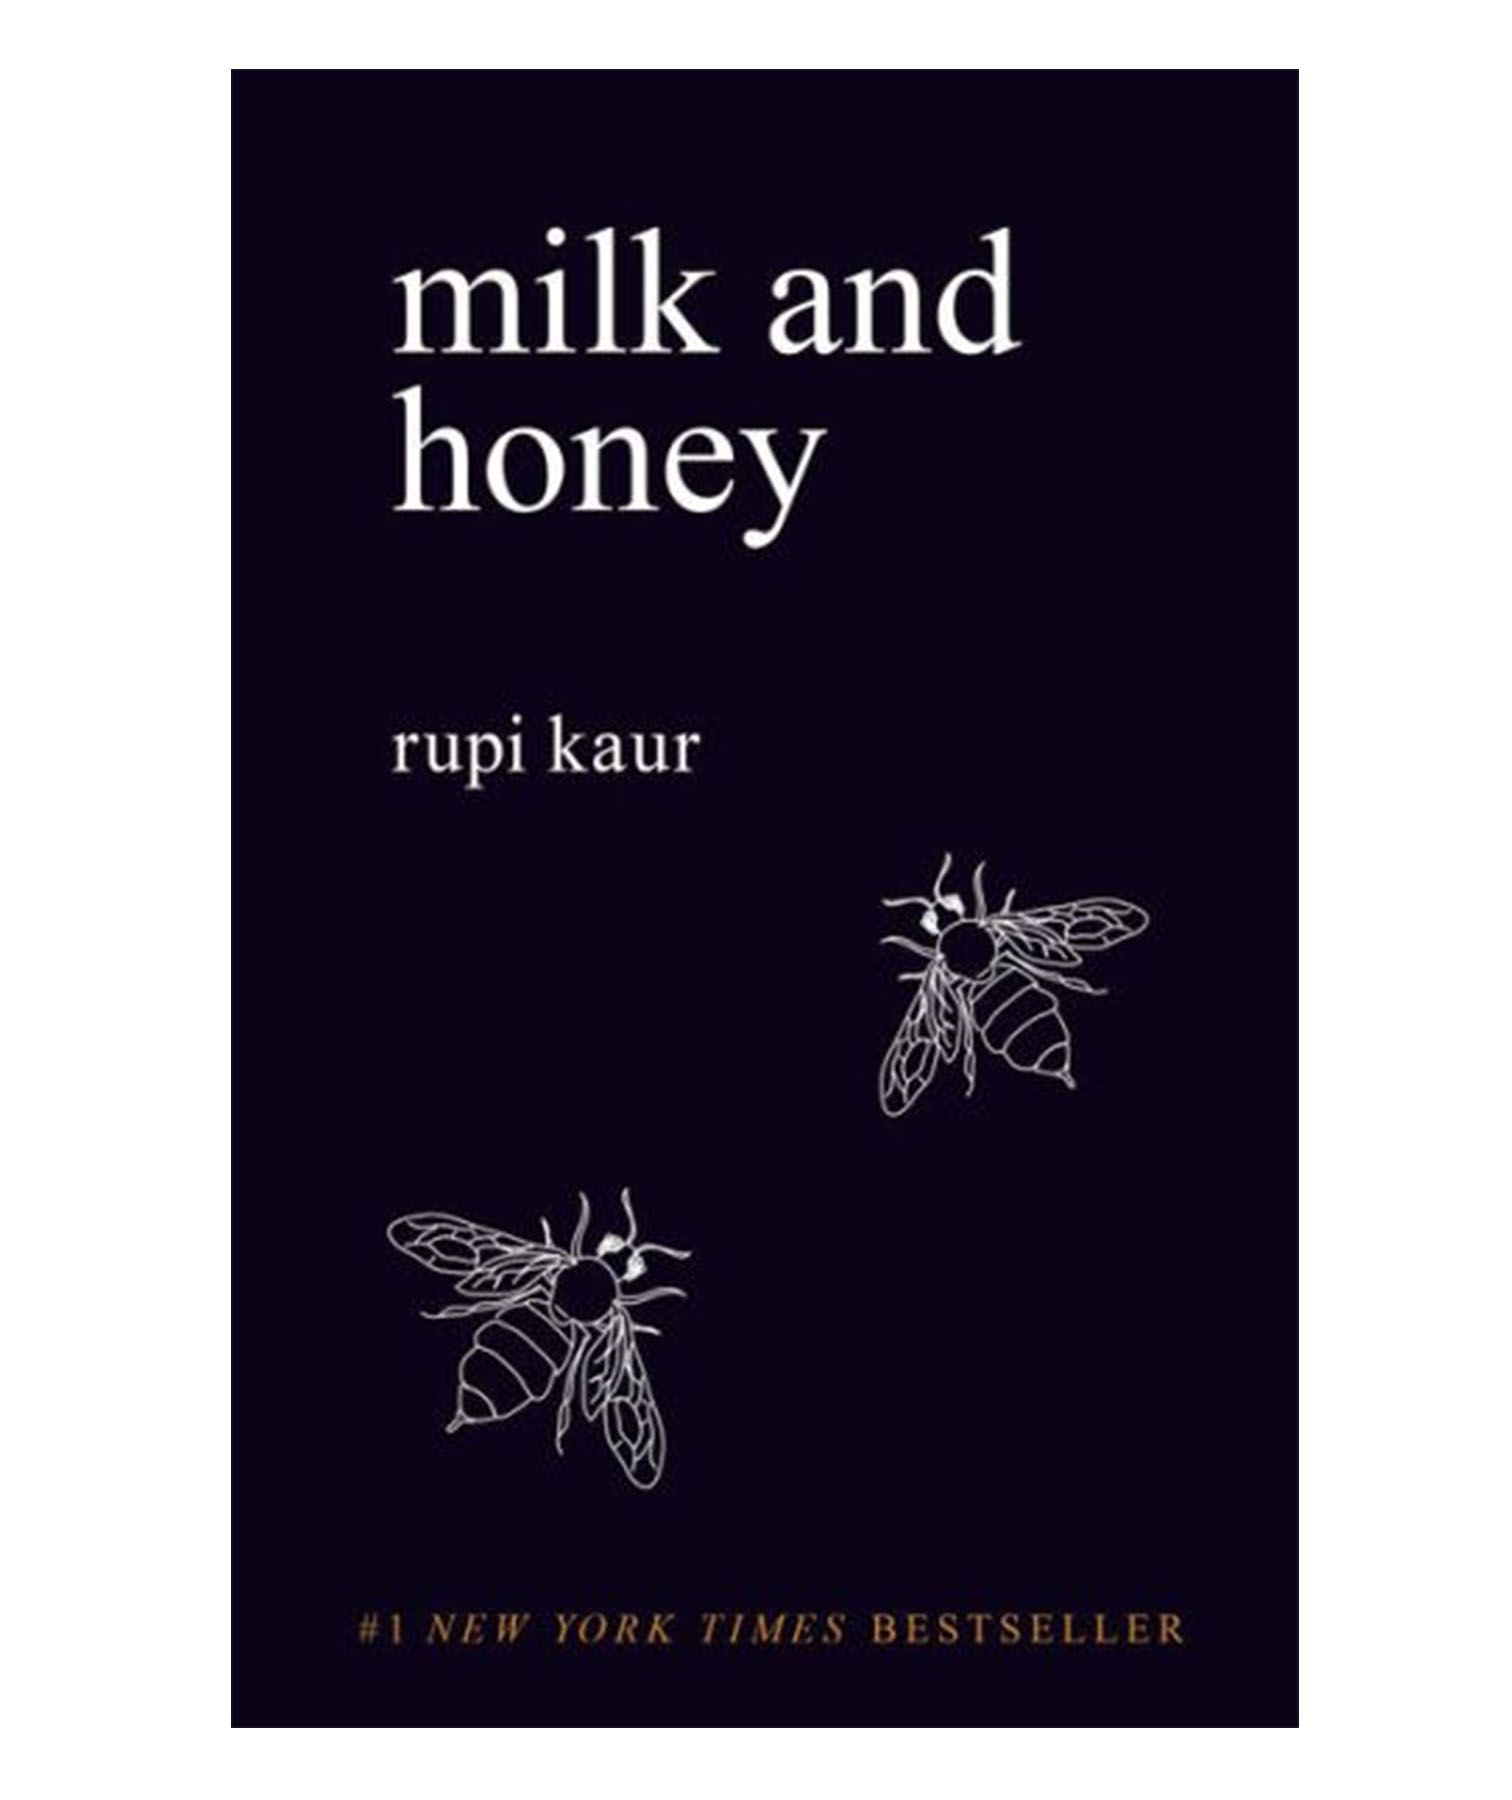 Књига о млеку и меду